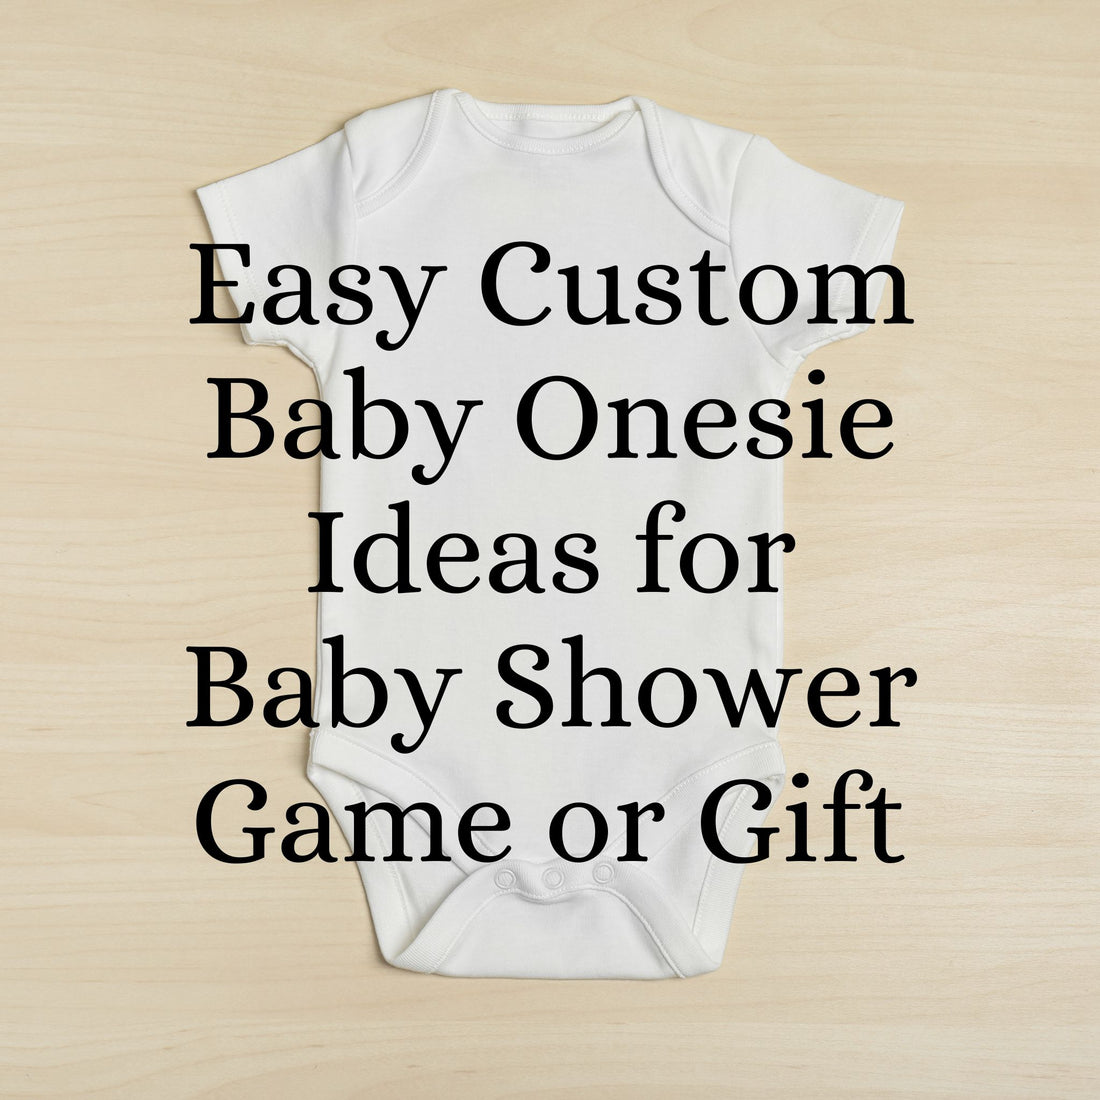 Easy Custom Baby Onesie Ideas for Baby Shower Game or Gift